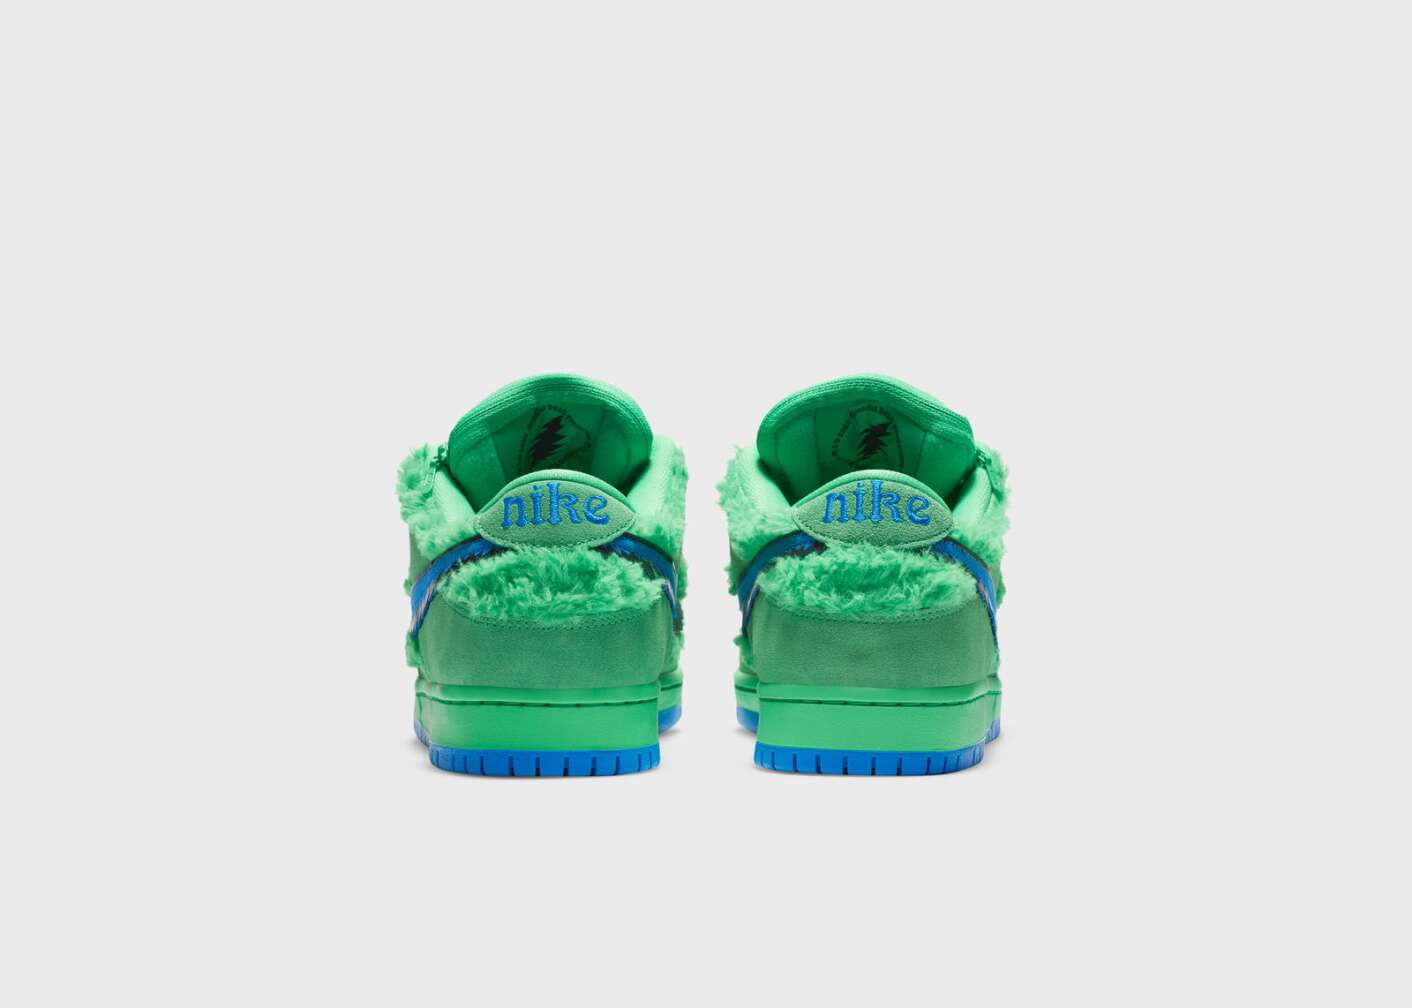 Grüne Nike- Schuhe